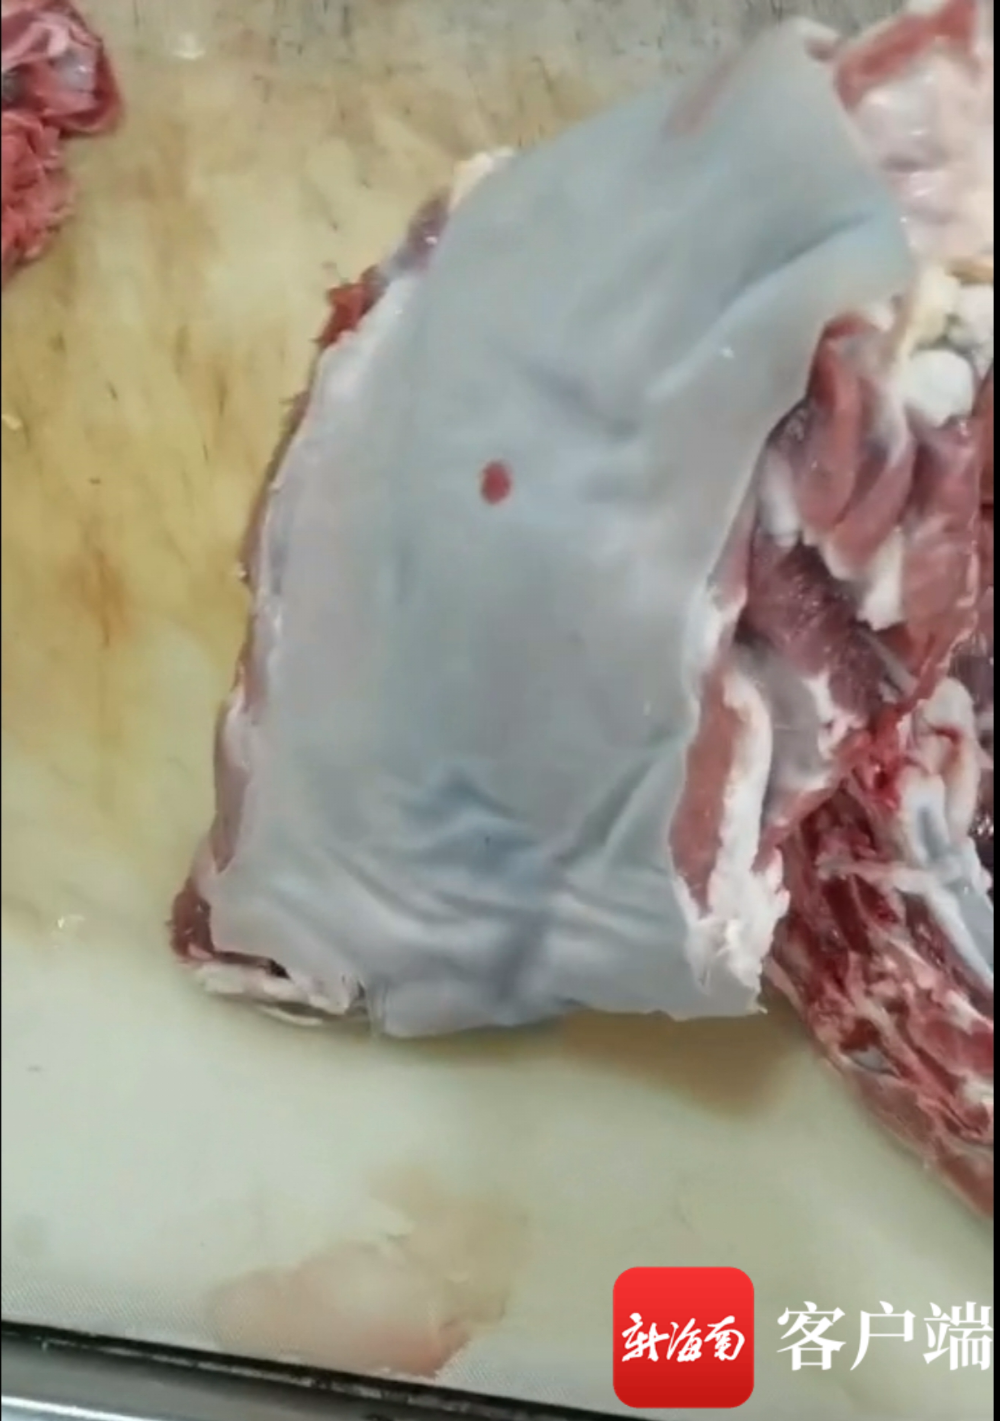 排查中发现的疑似染色羊肉。视频截屏